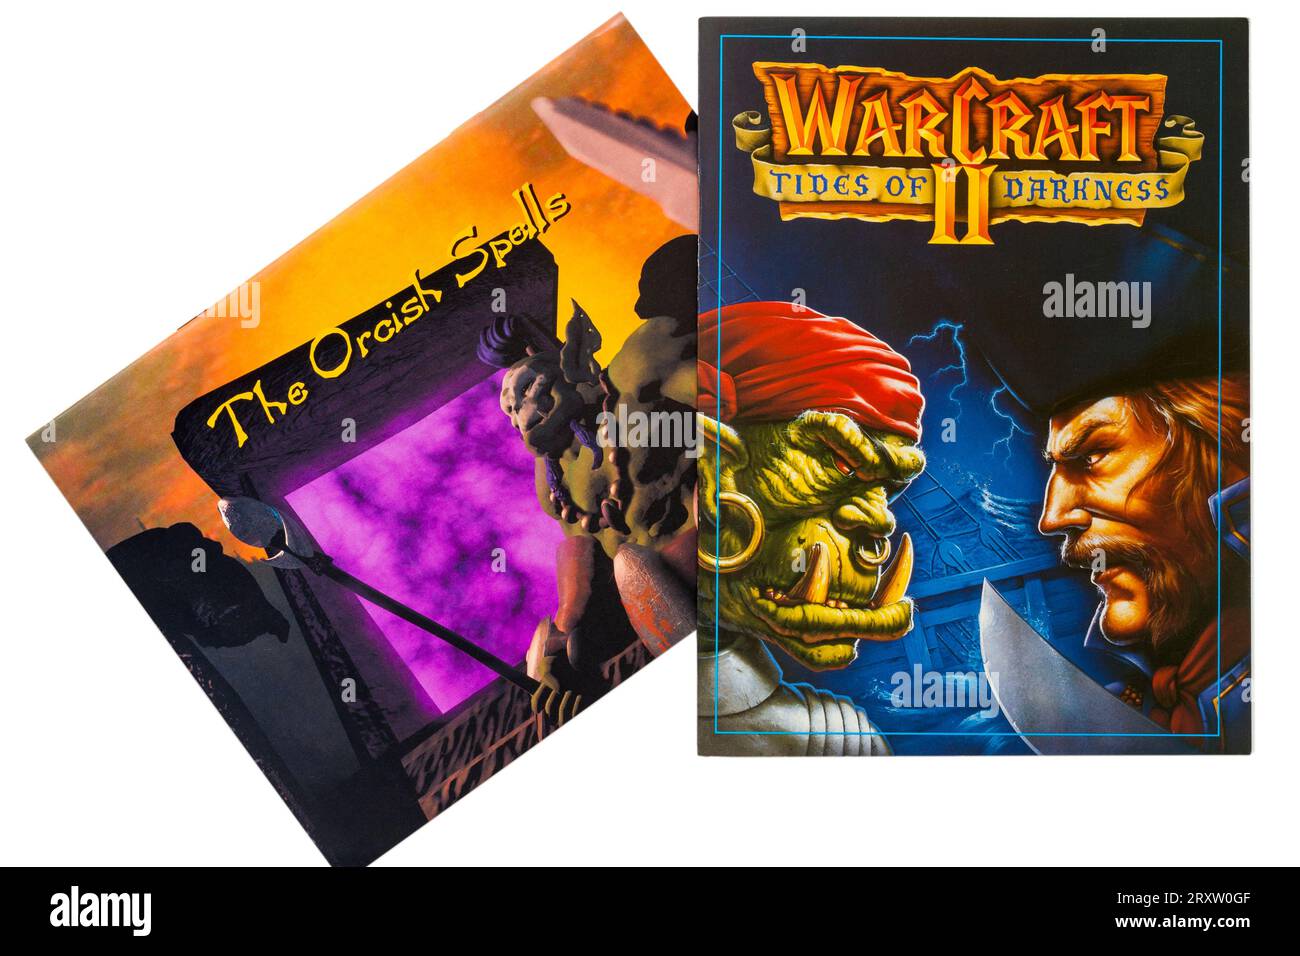 Warcraft II Tides of Darkness in edizione deluxe con il libro The Orcish Spells isolato su sfondo bianco Foto Stock